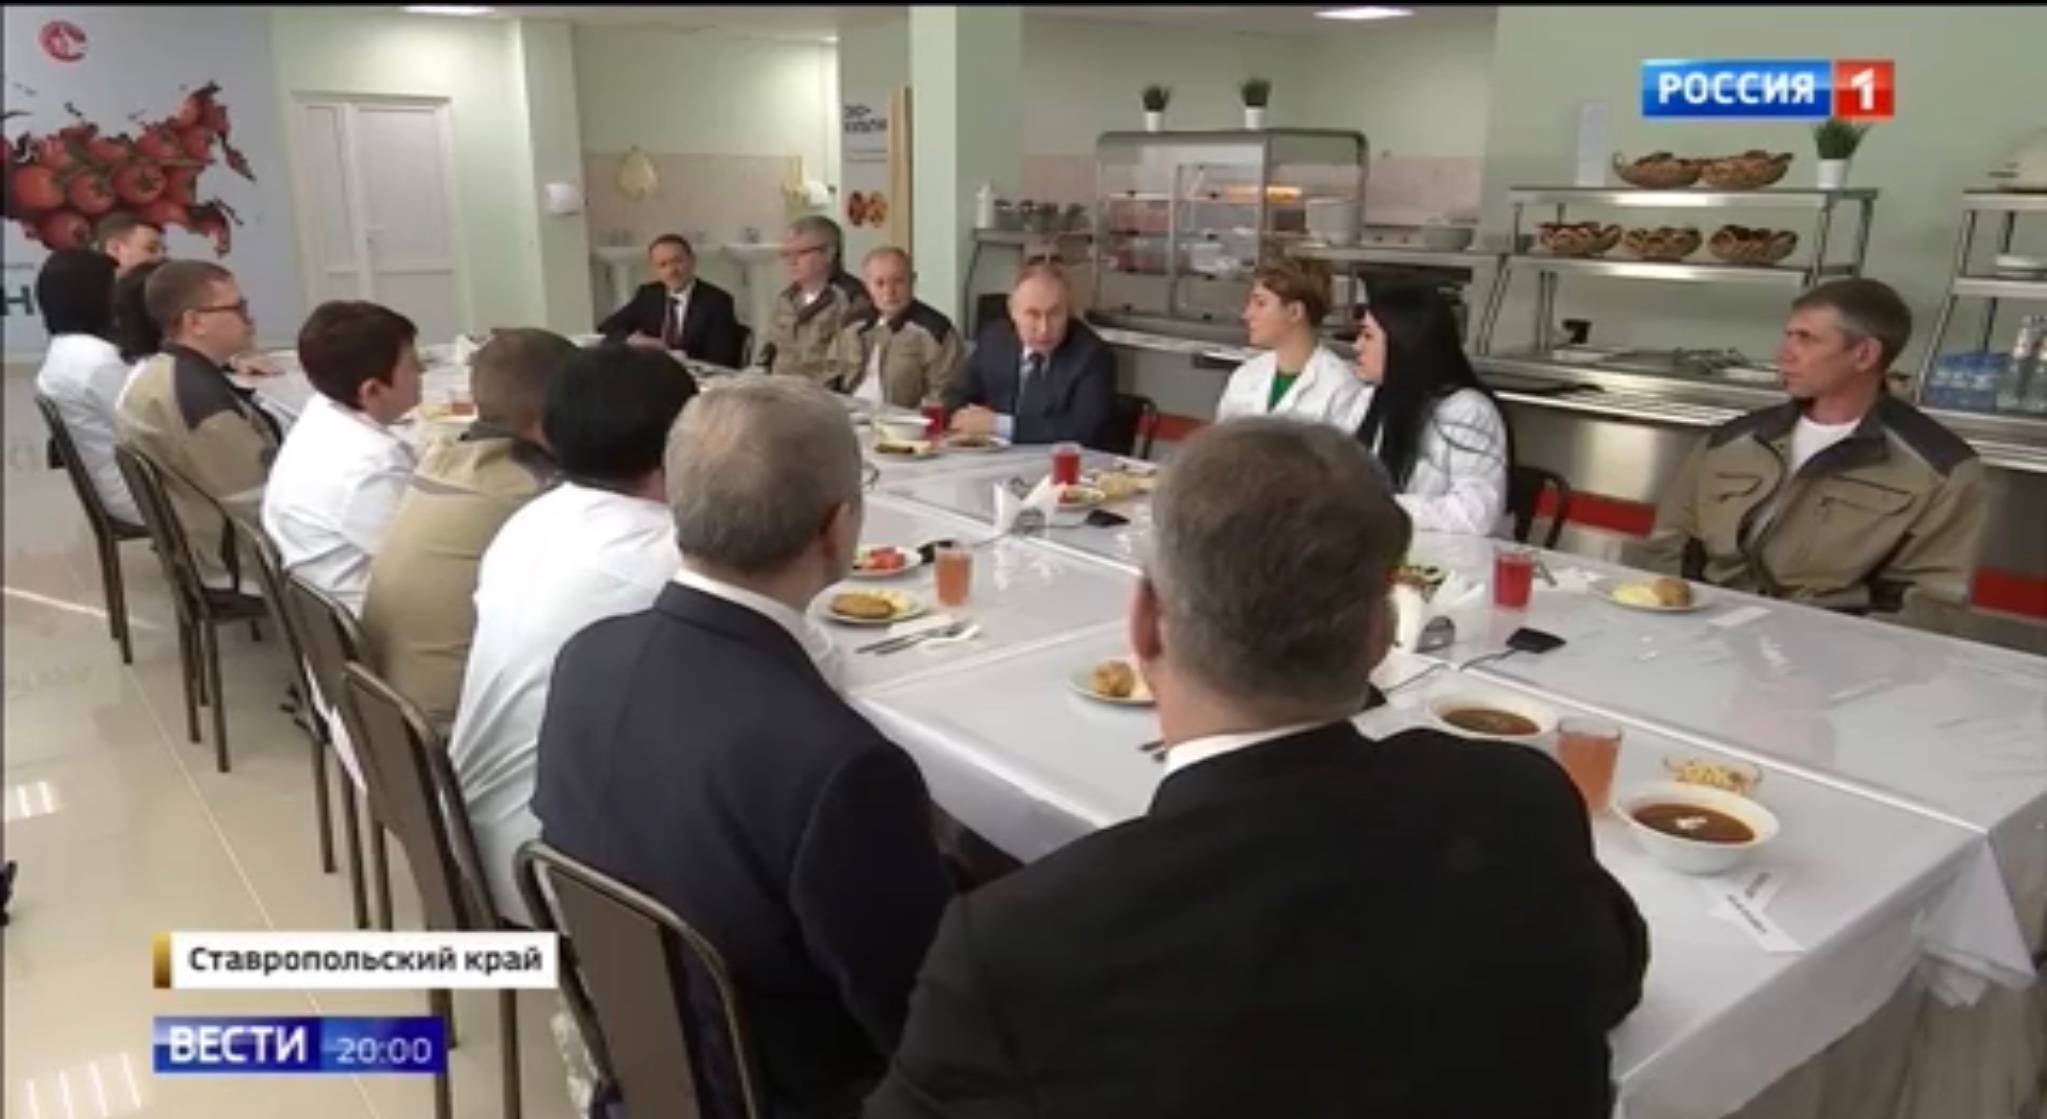 Ludzie w stołówce siedzą przy obiedzie (zupa, drugie, surówka i kompot). W srodku Putin